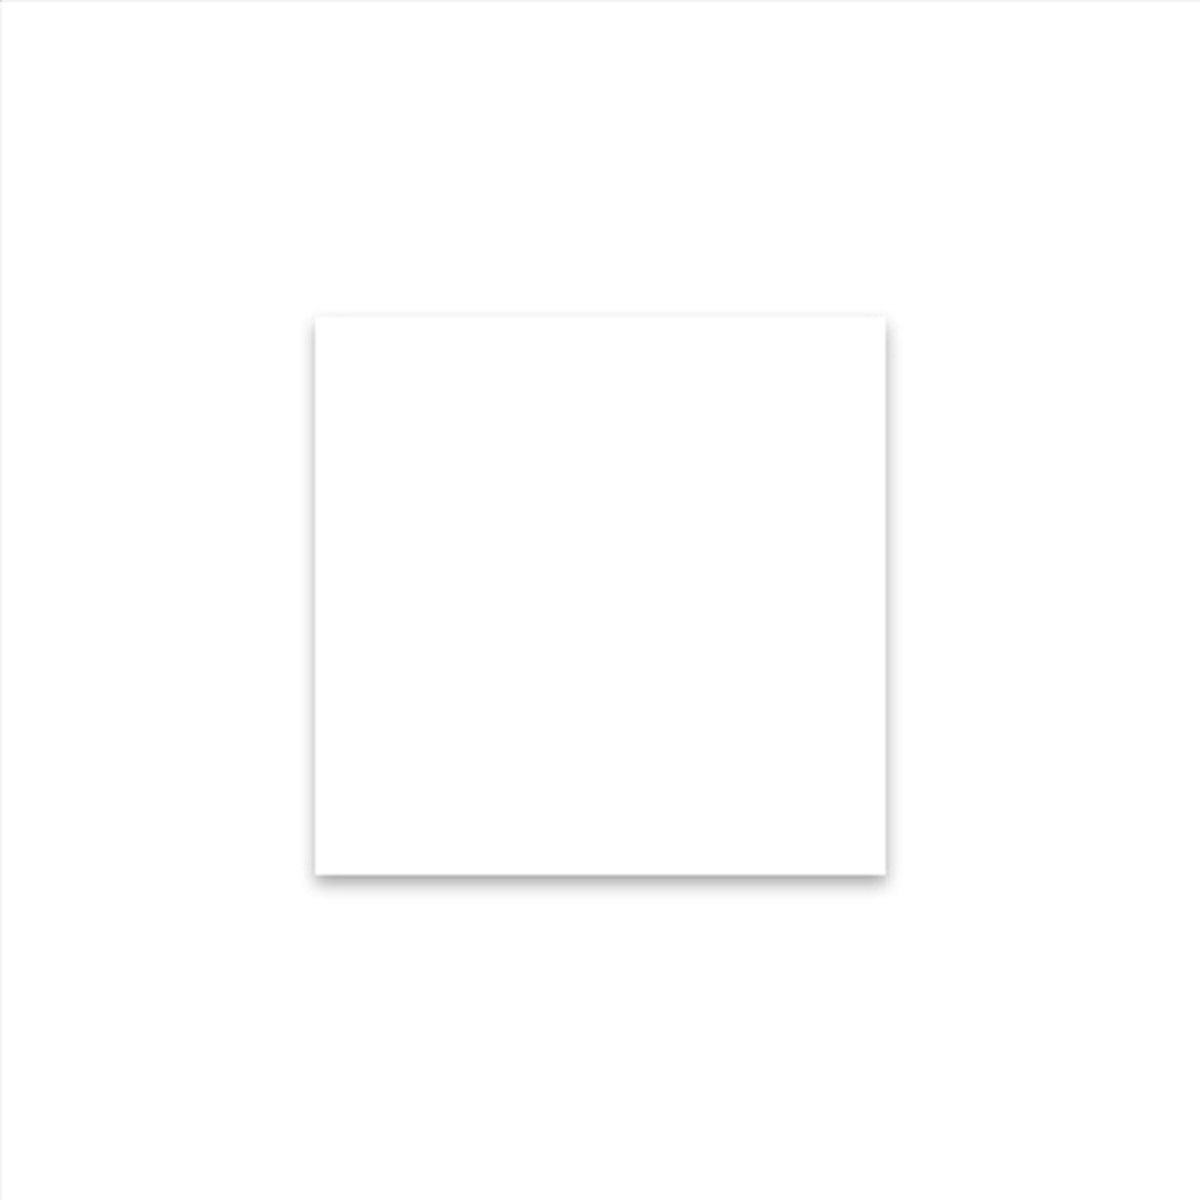 Vetvrij wikkelpapier of hamburgervellen wit 31x31 cm | Inhoud: 1000 stuks